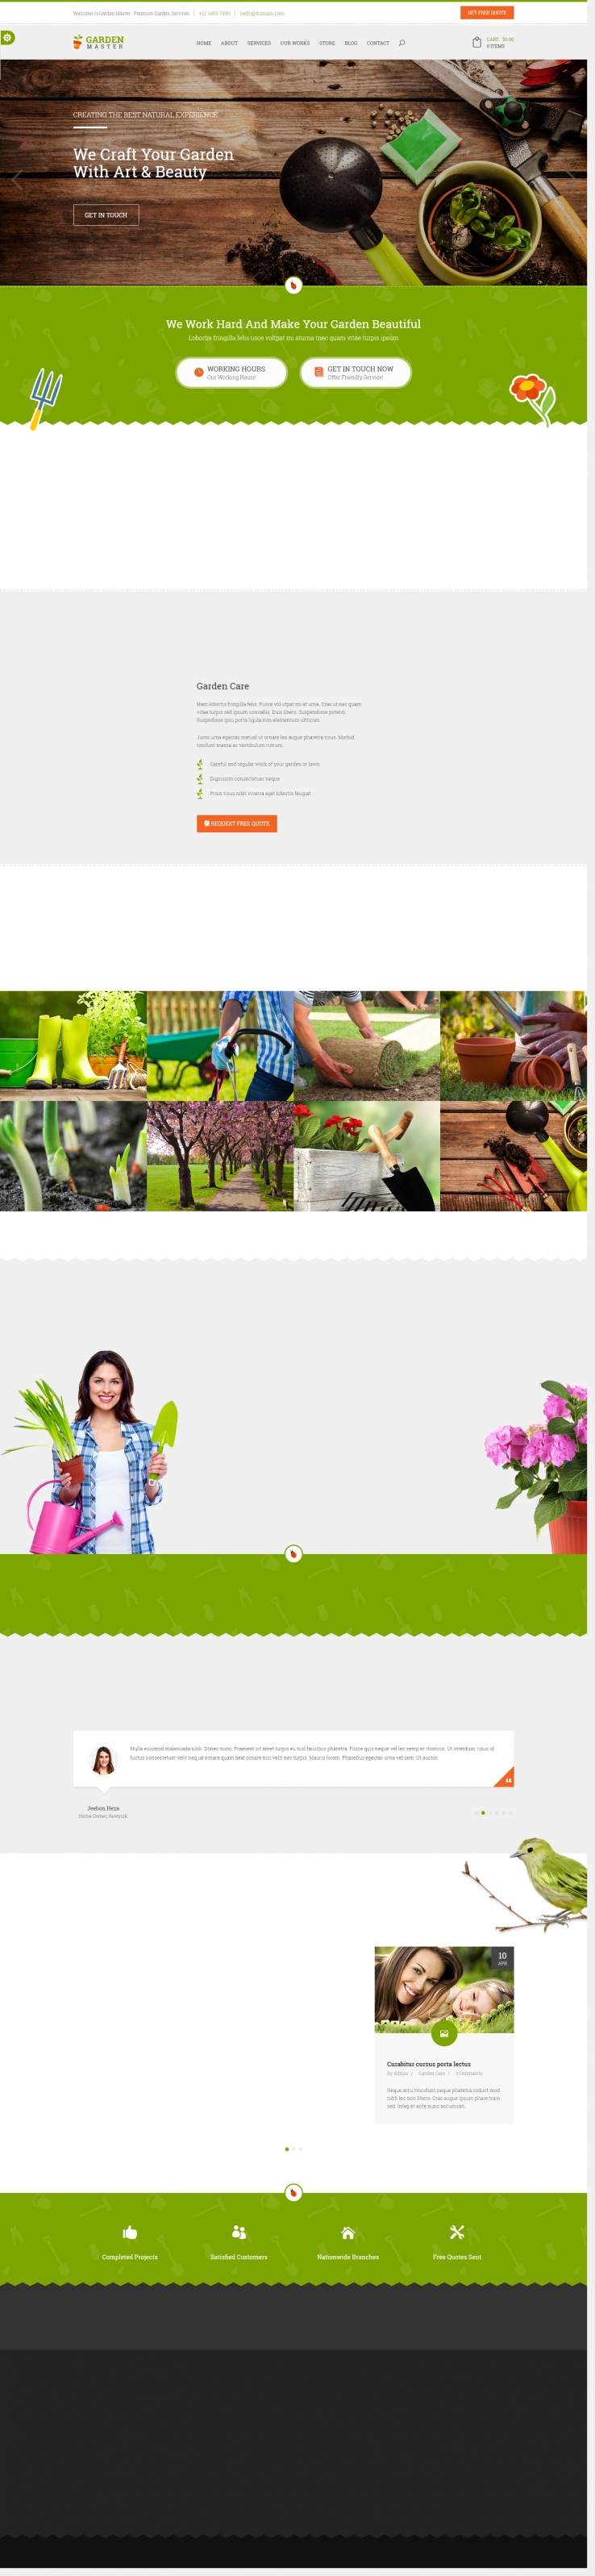 灰色简洁风格的园林绿化企业网站模板